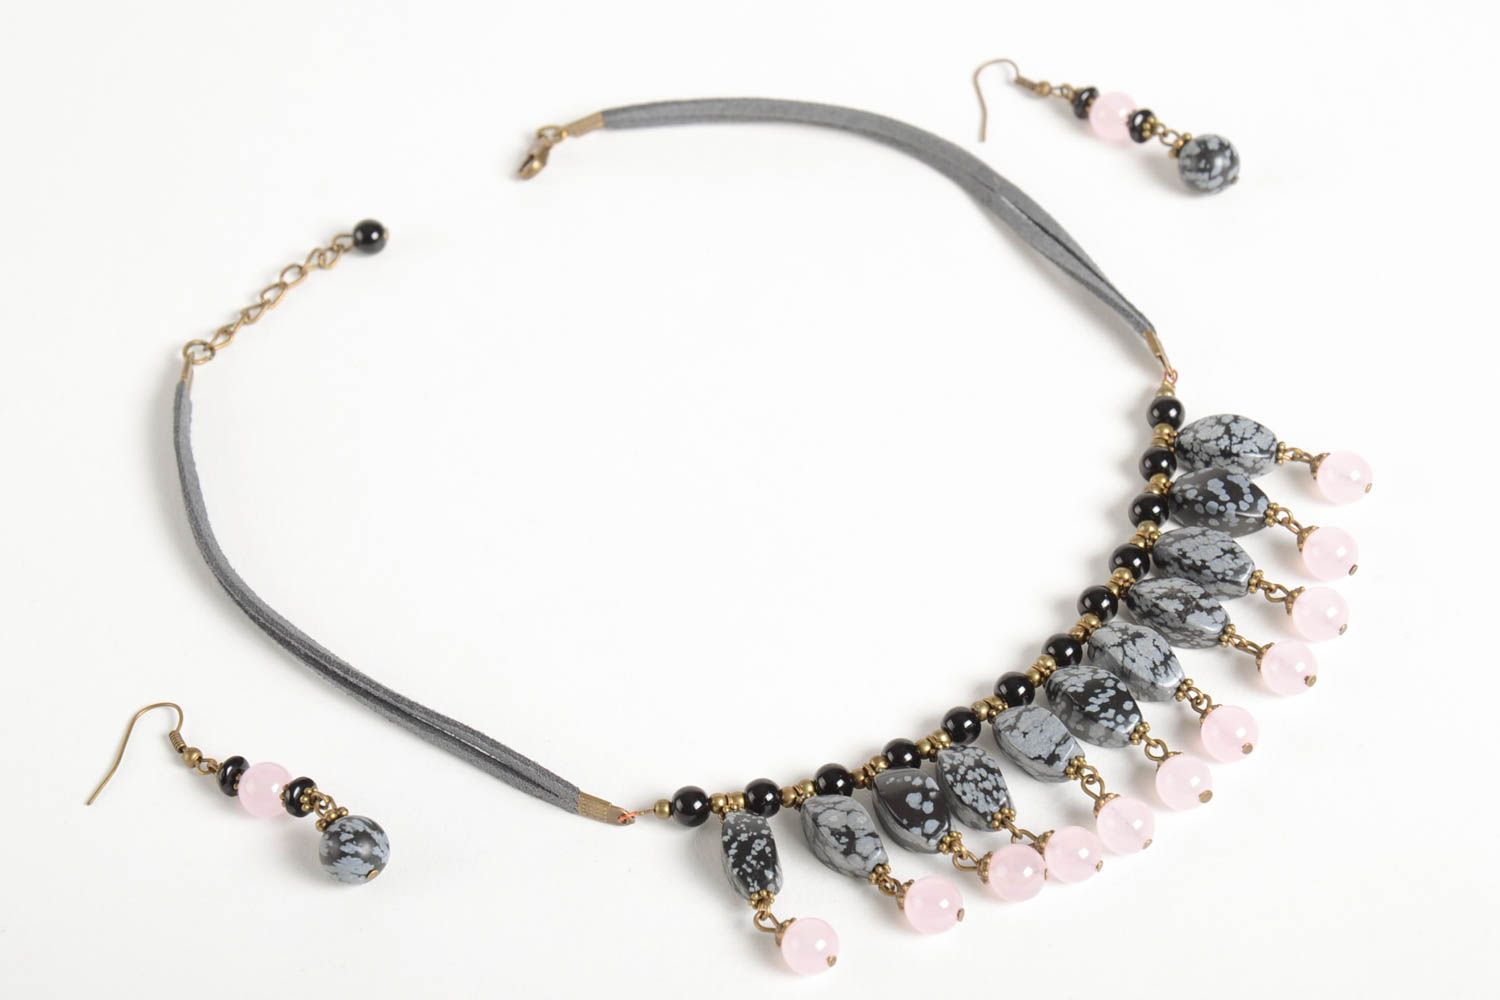 Handmade designer earrings stylish elegant necklace natural stone jewelry set photo 5